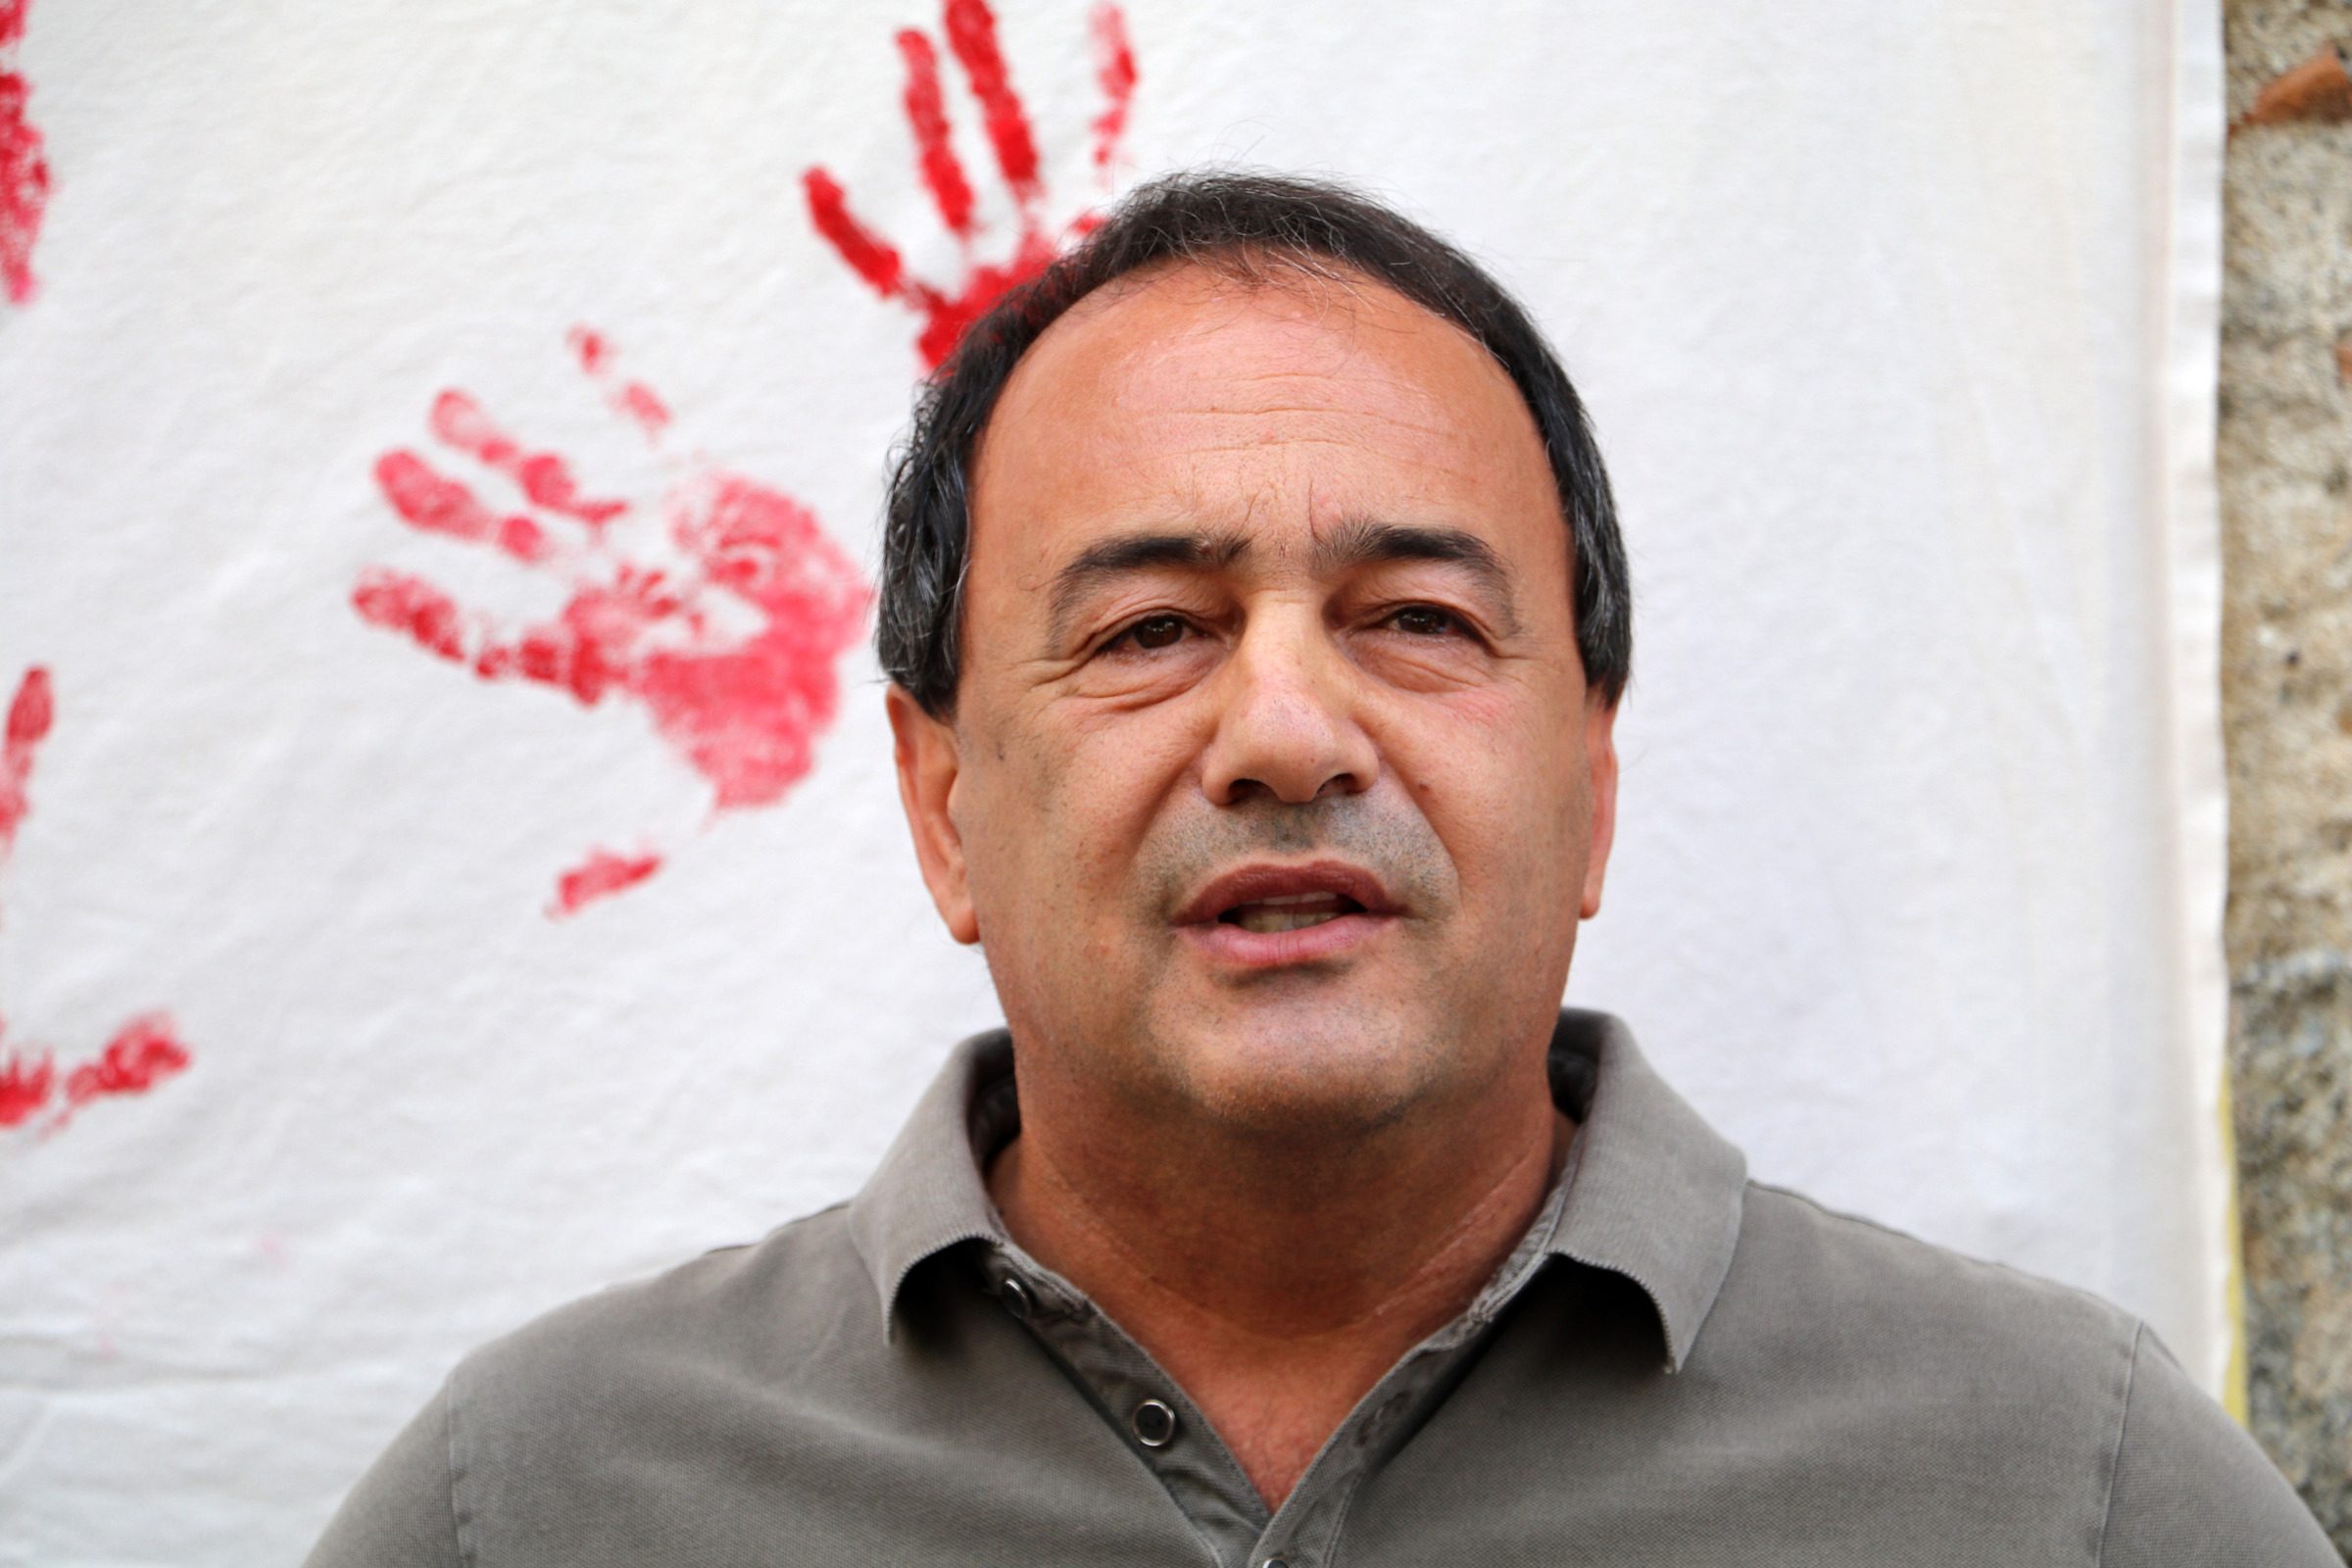 Mimmo Lucano attaccato per aver accusato Salvini: "L'inchiesta contro di me è stata voluta da lui"